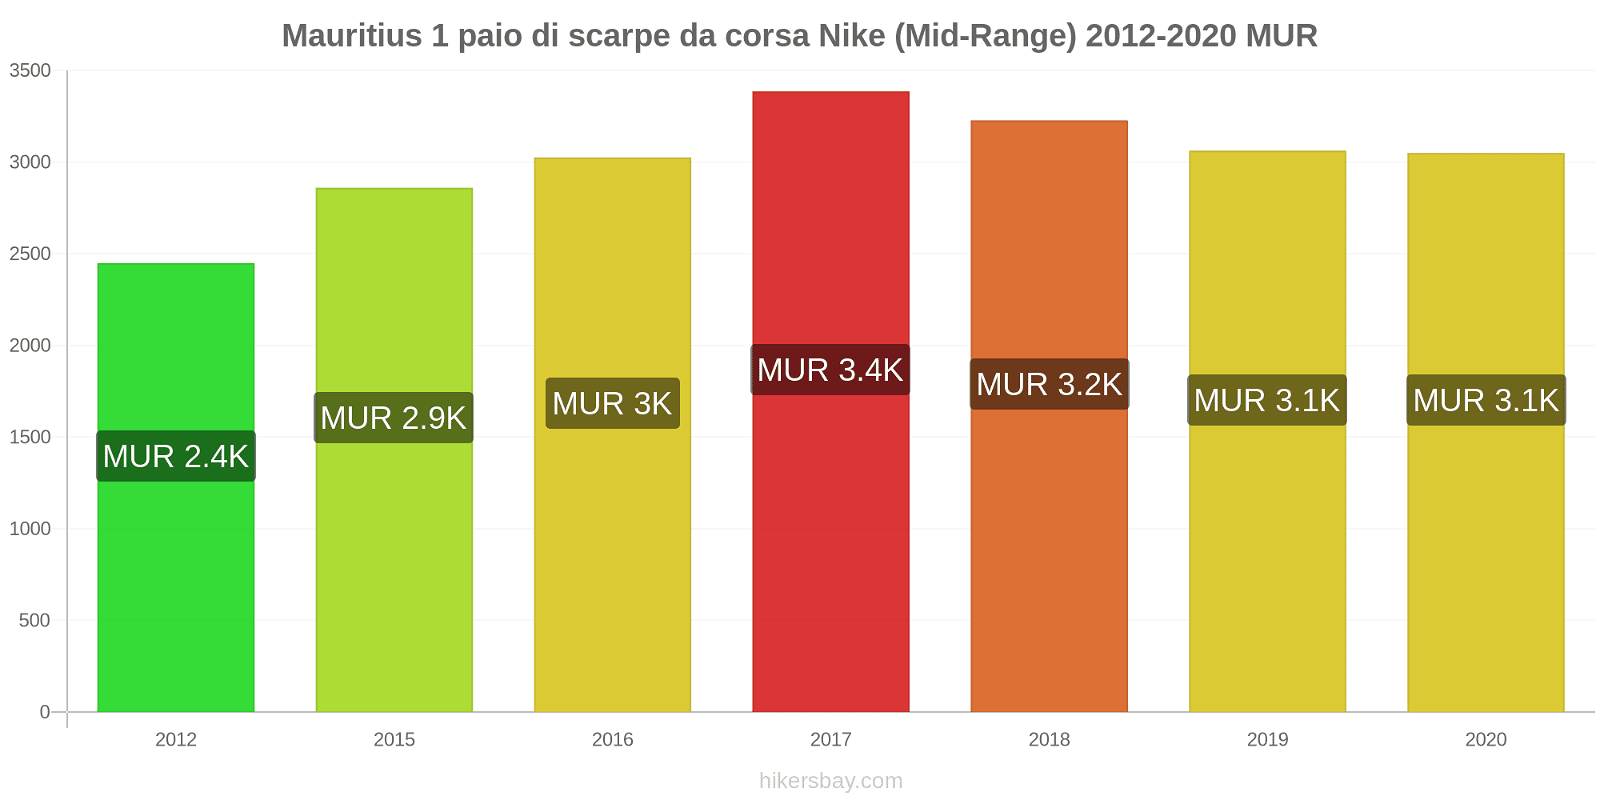 Mauritius variazioni di prezzo 1 paio di scarpe da corsa Nike (simile) hikersbay.com